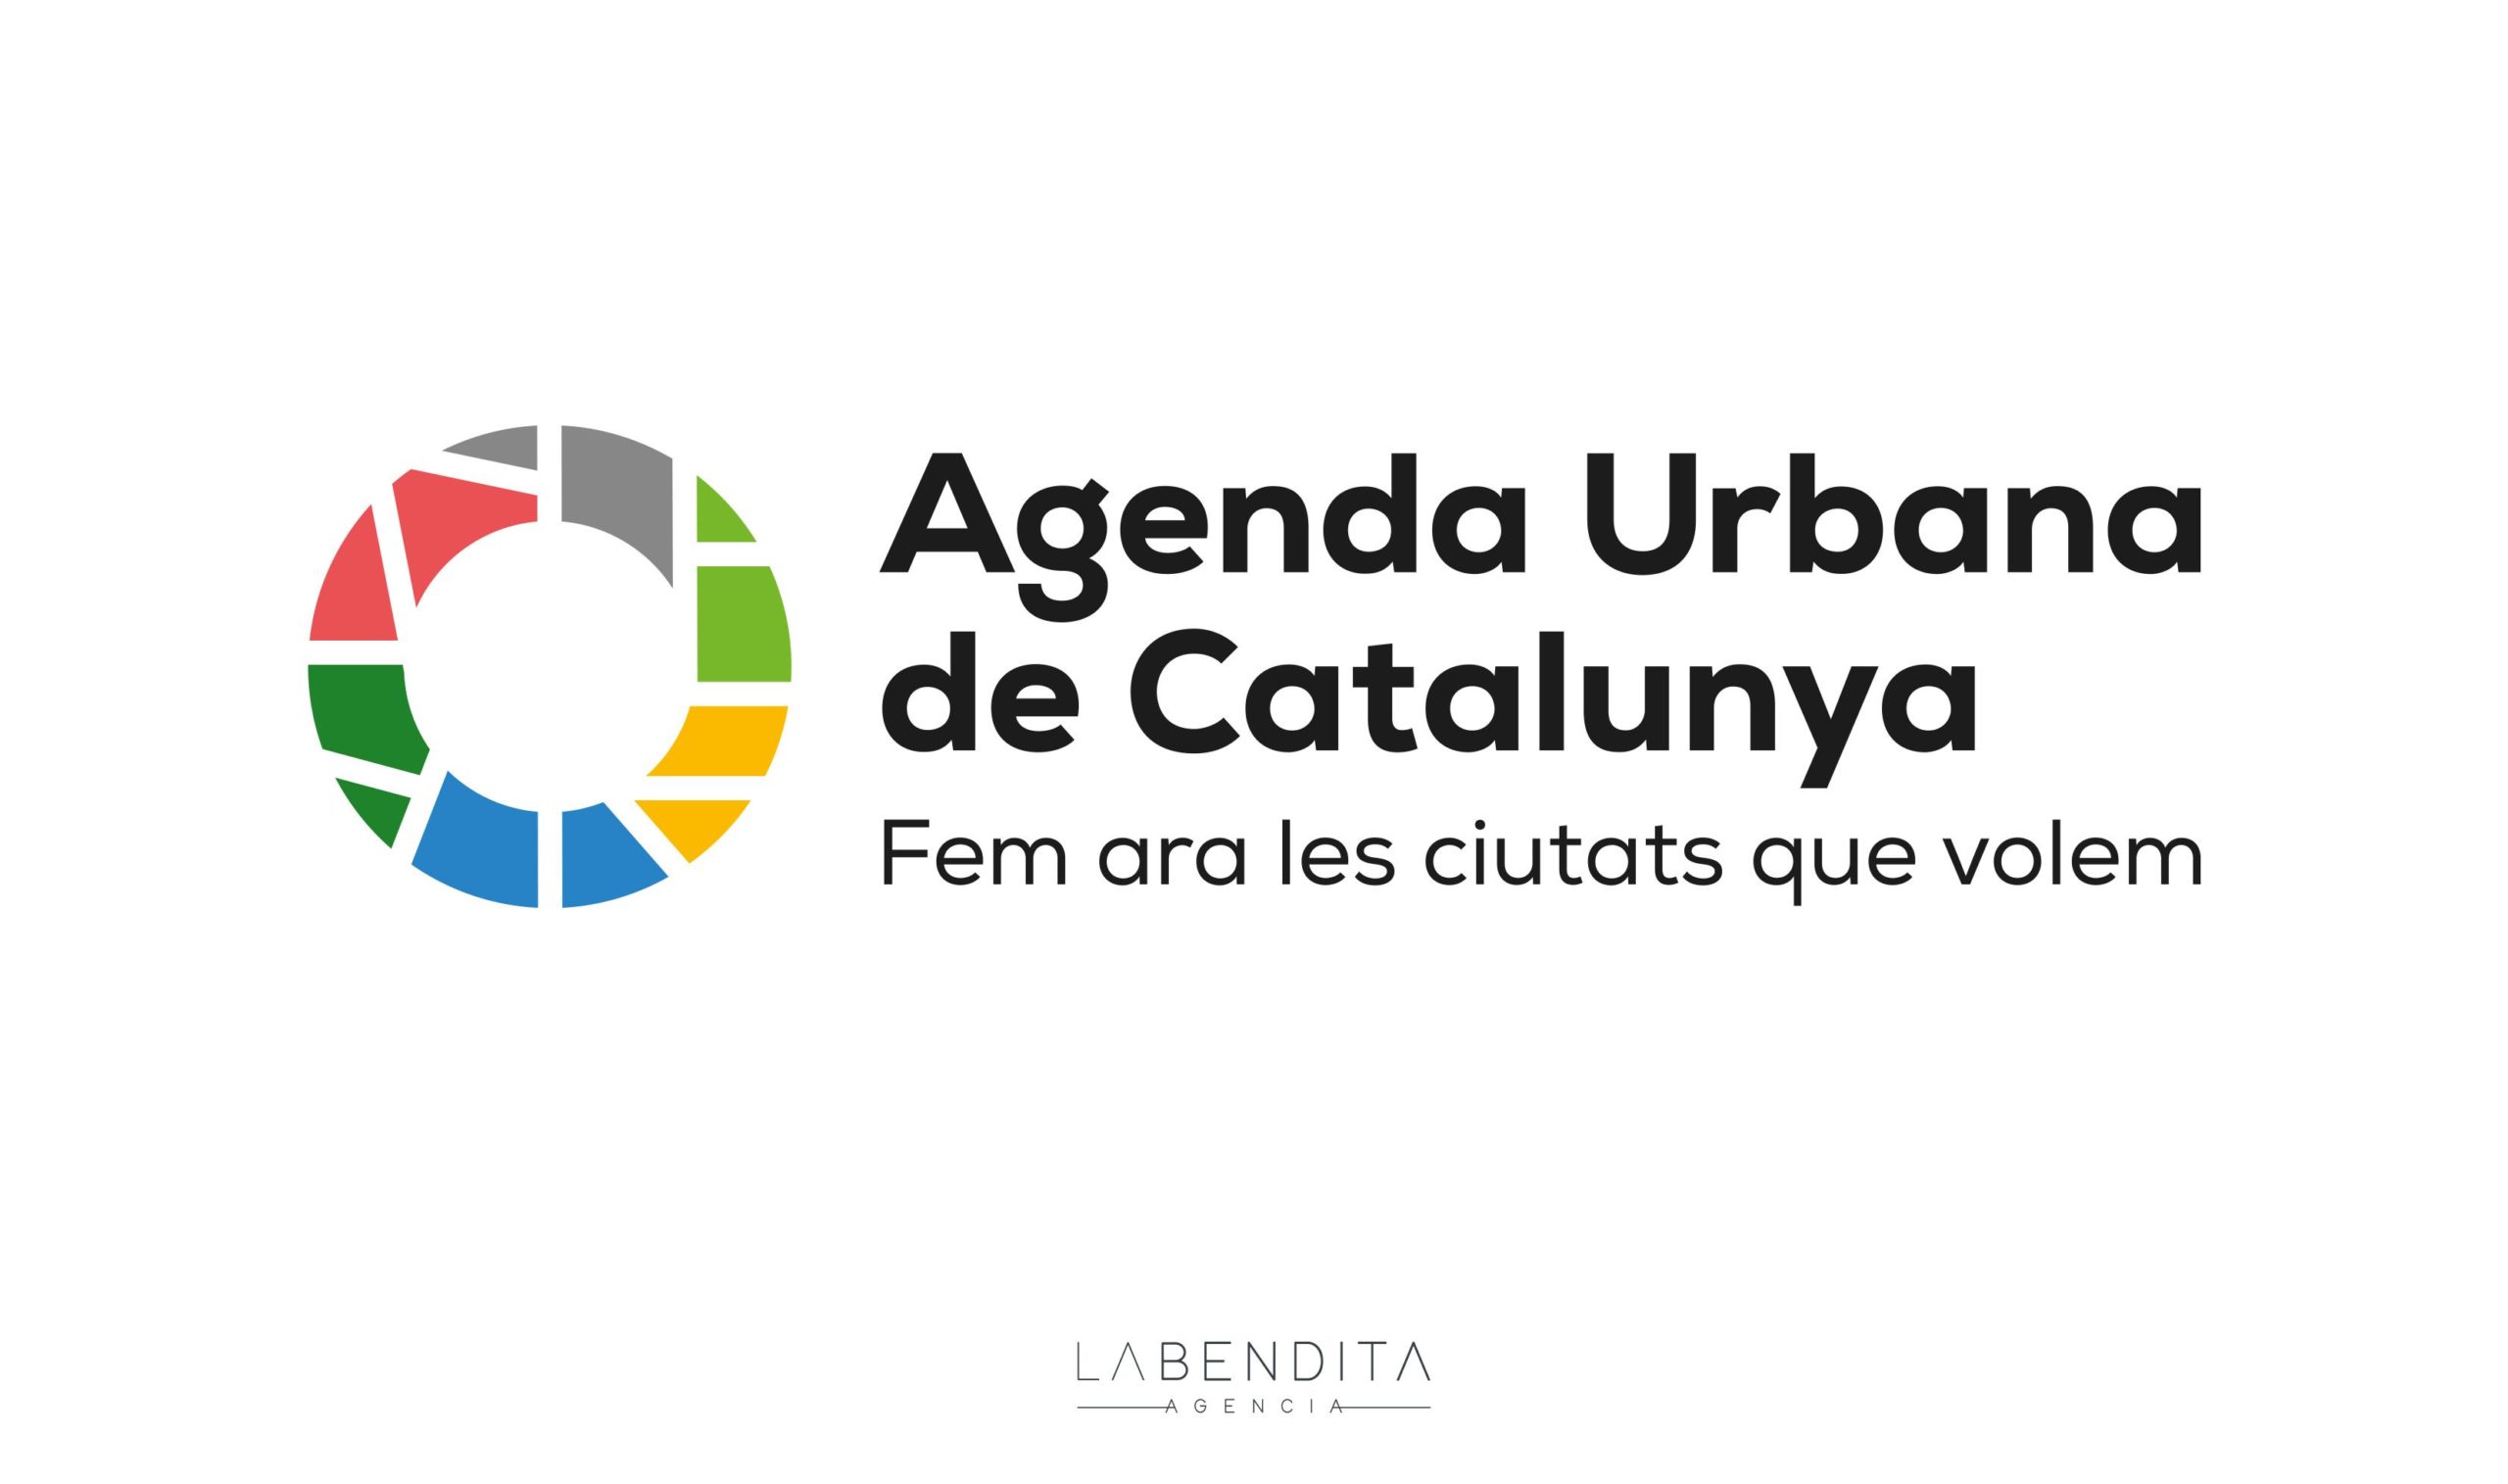 LA BENDITA AGENCIA crea la campaña para dar a conocer la Agenda Urbana de la Generalitat de Cataluña